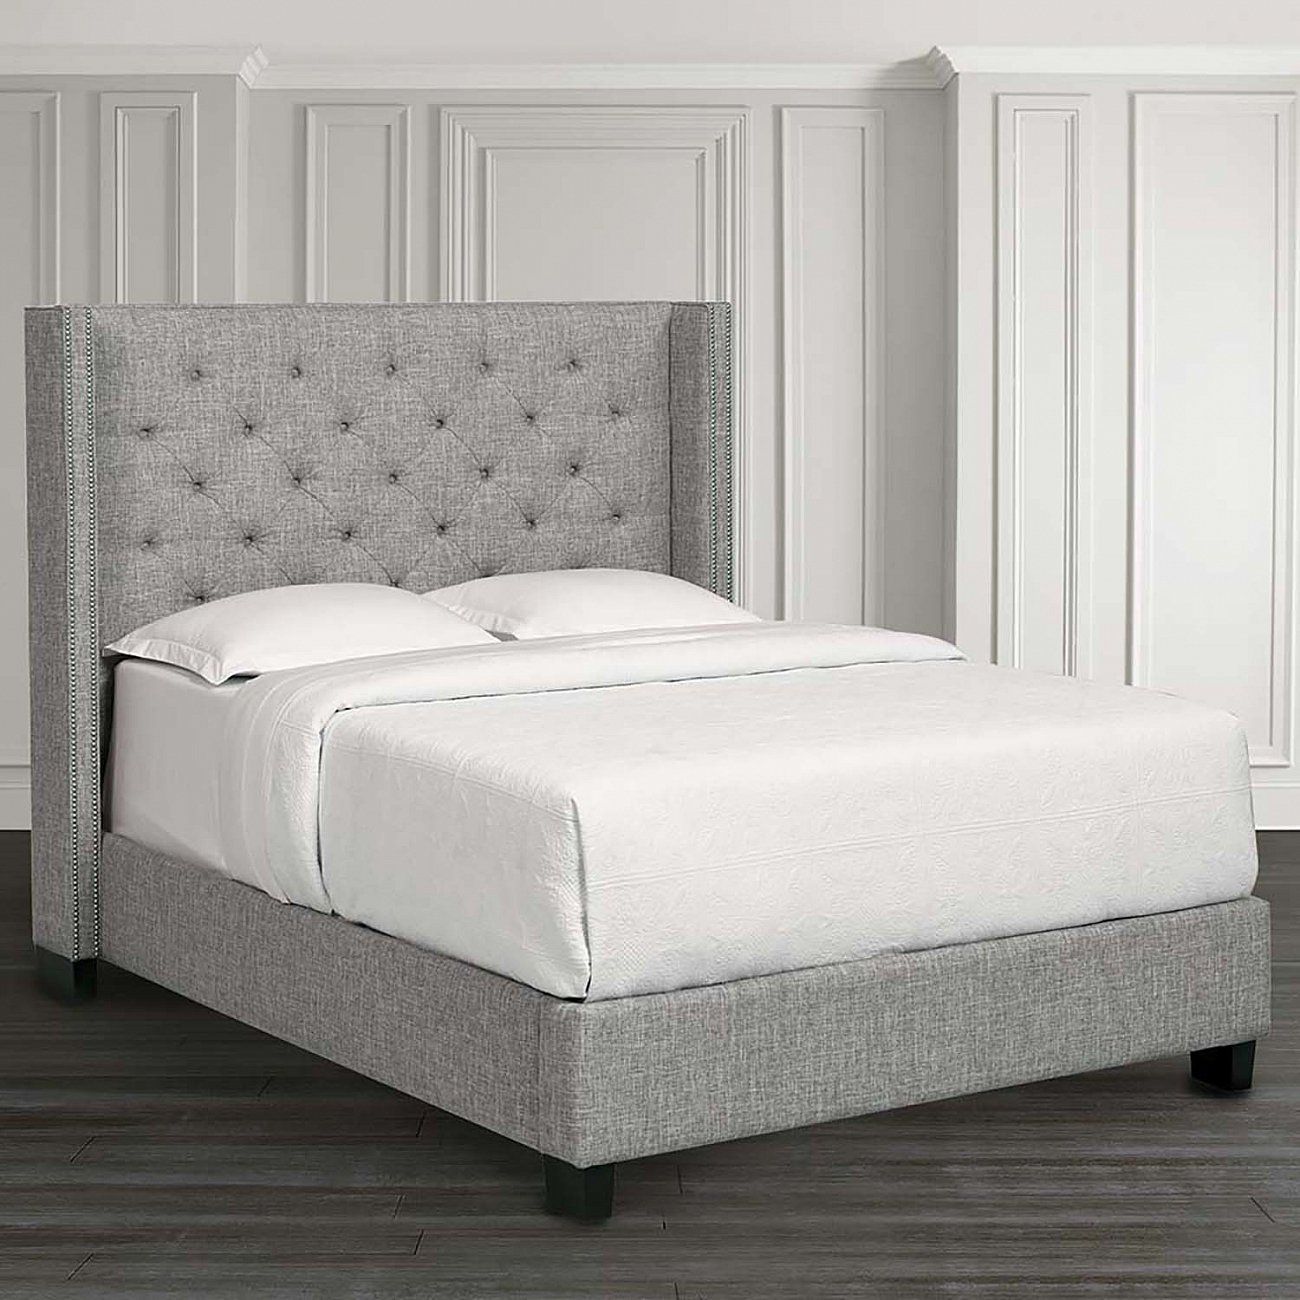 Кровать двуспальная 160х200 см с гвоздиками серо-бежевая Wing